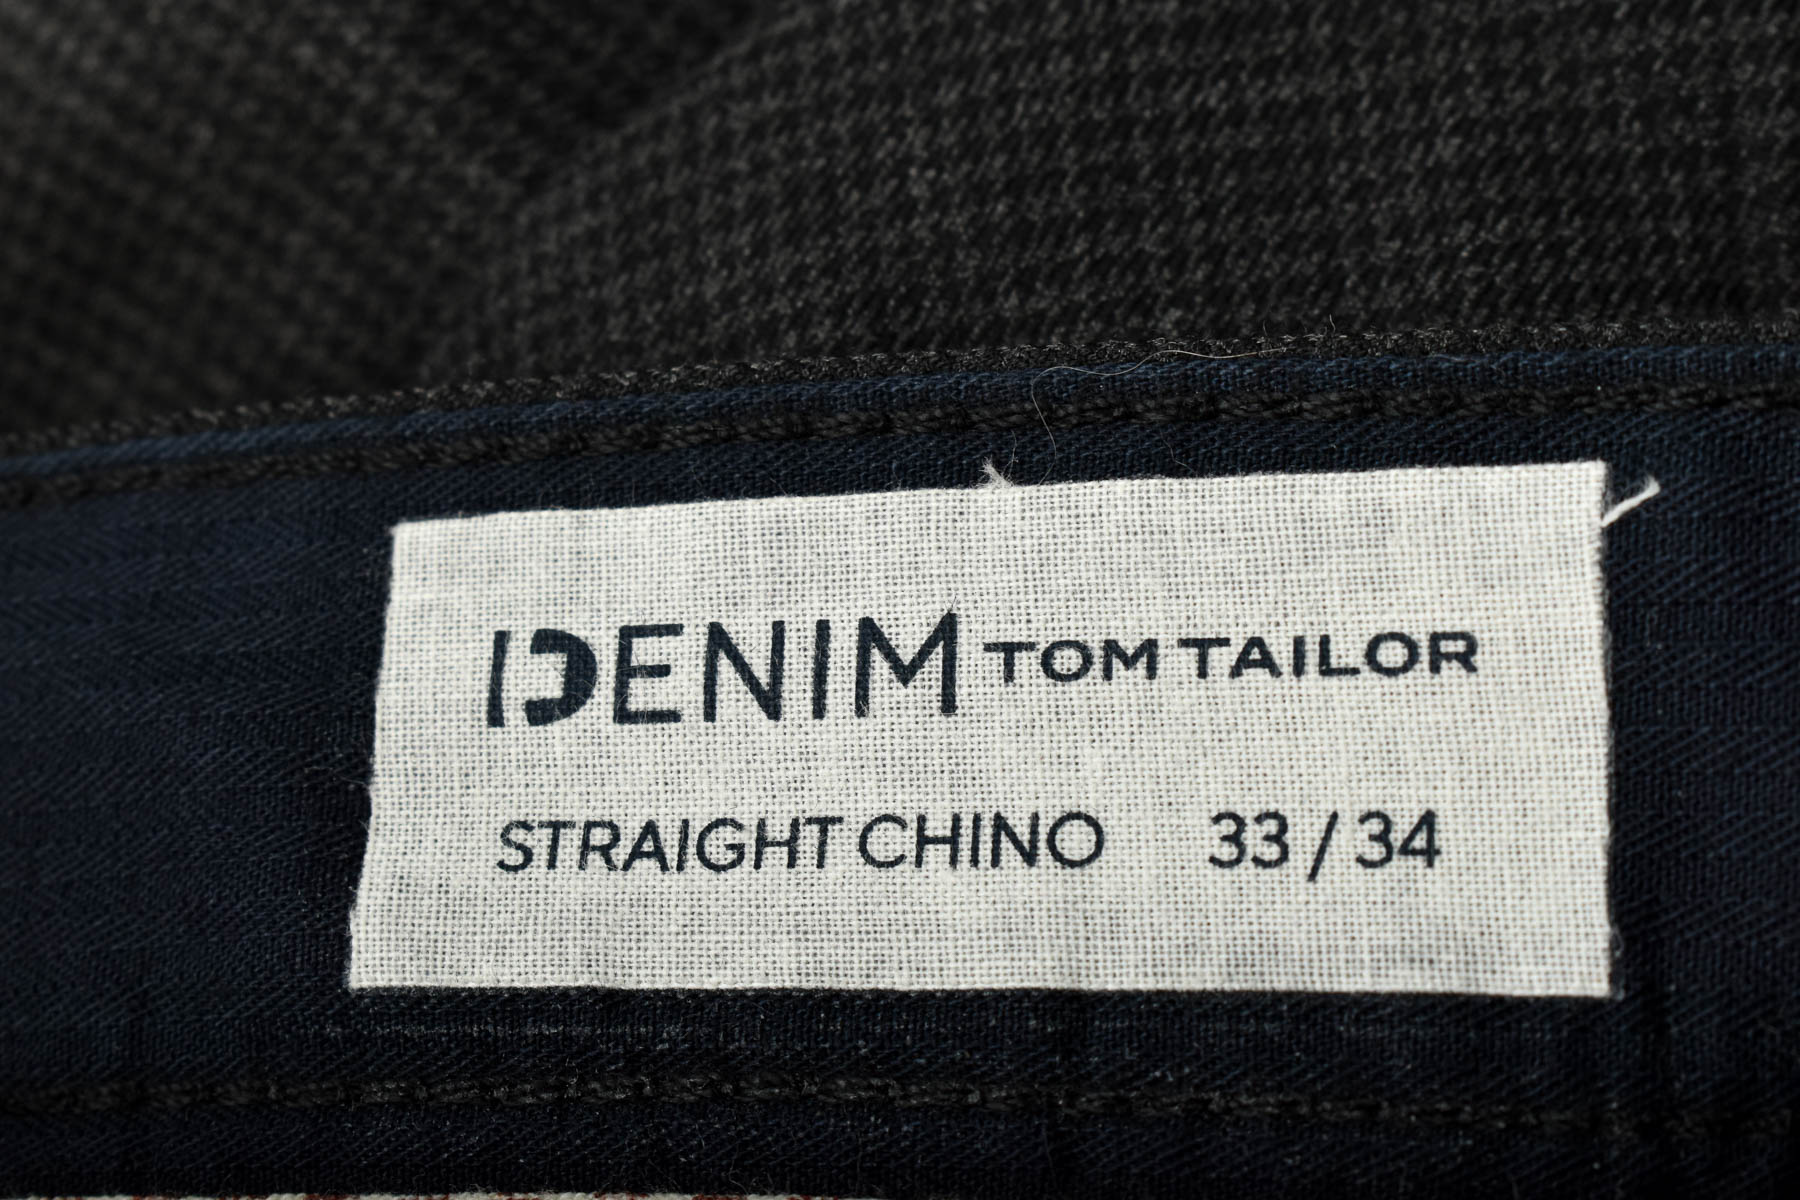 Ανδρικά παντελόνια - TOM TAILOR Denim - 2